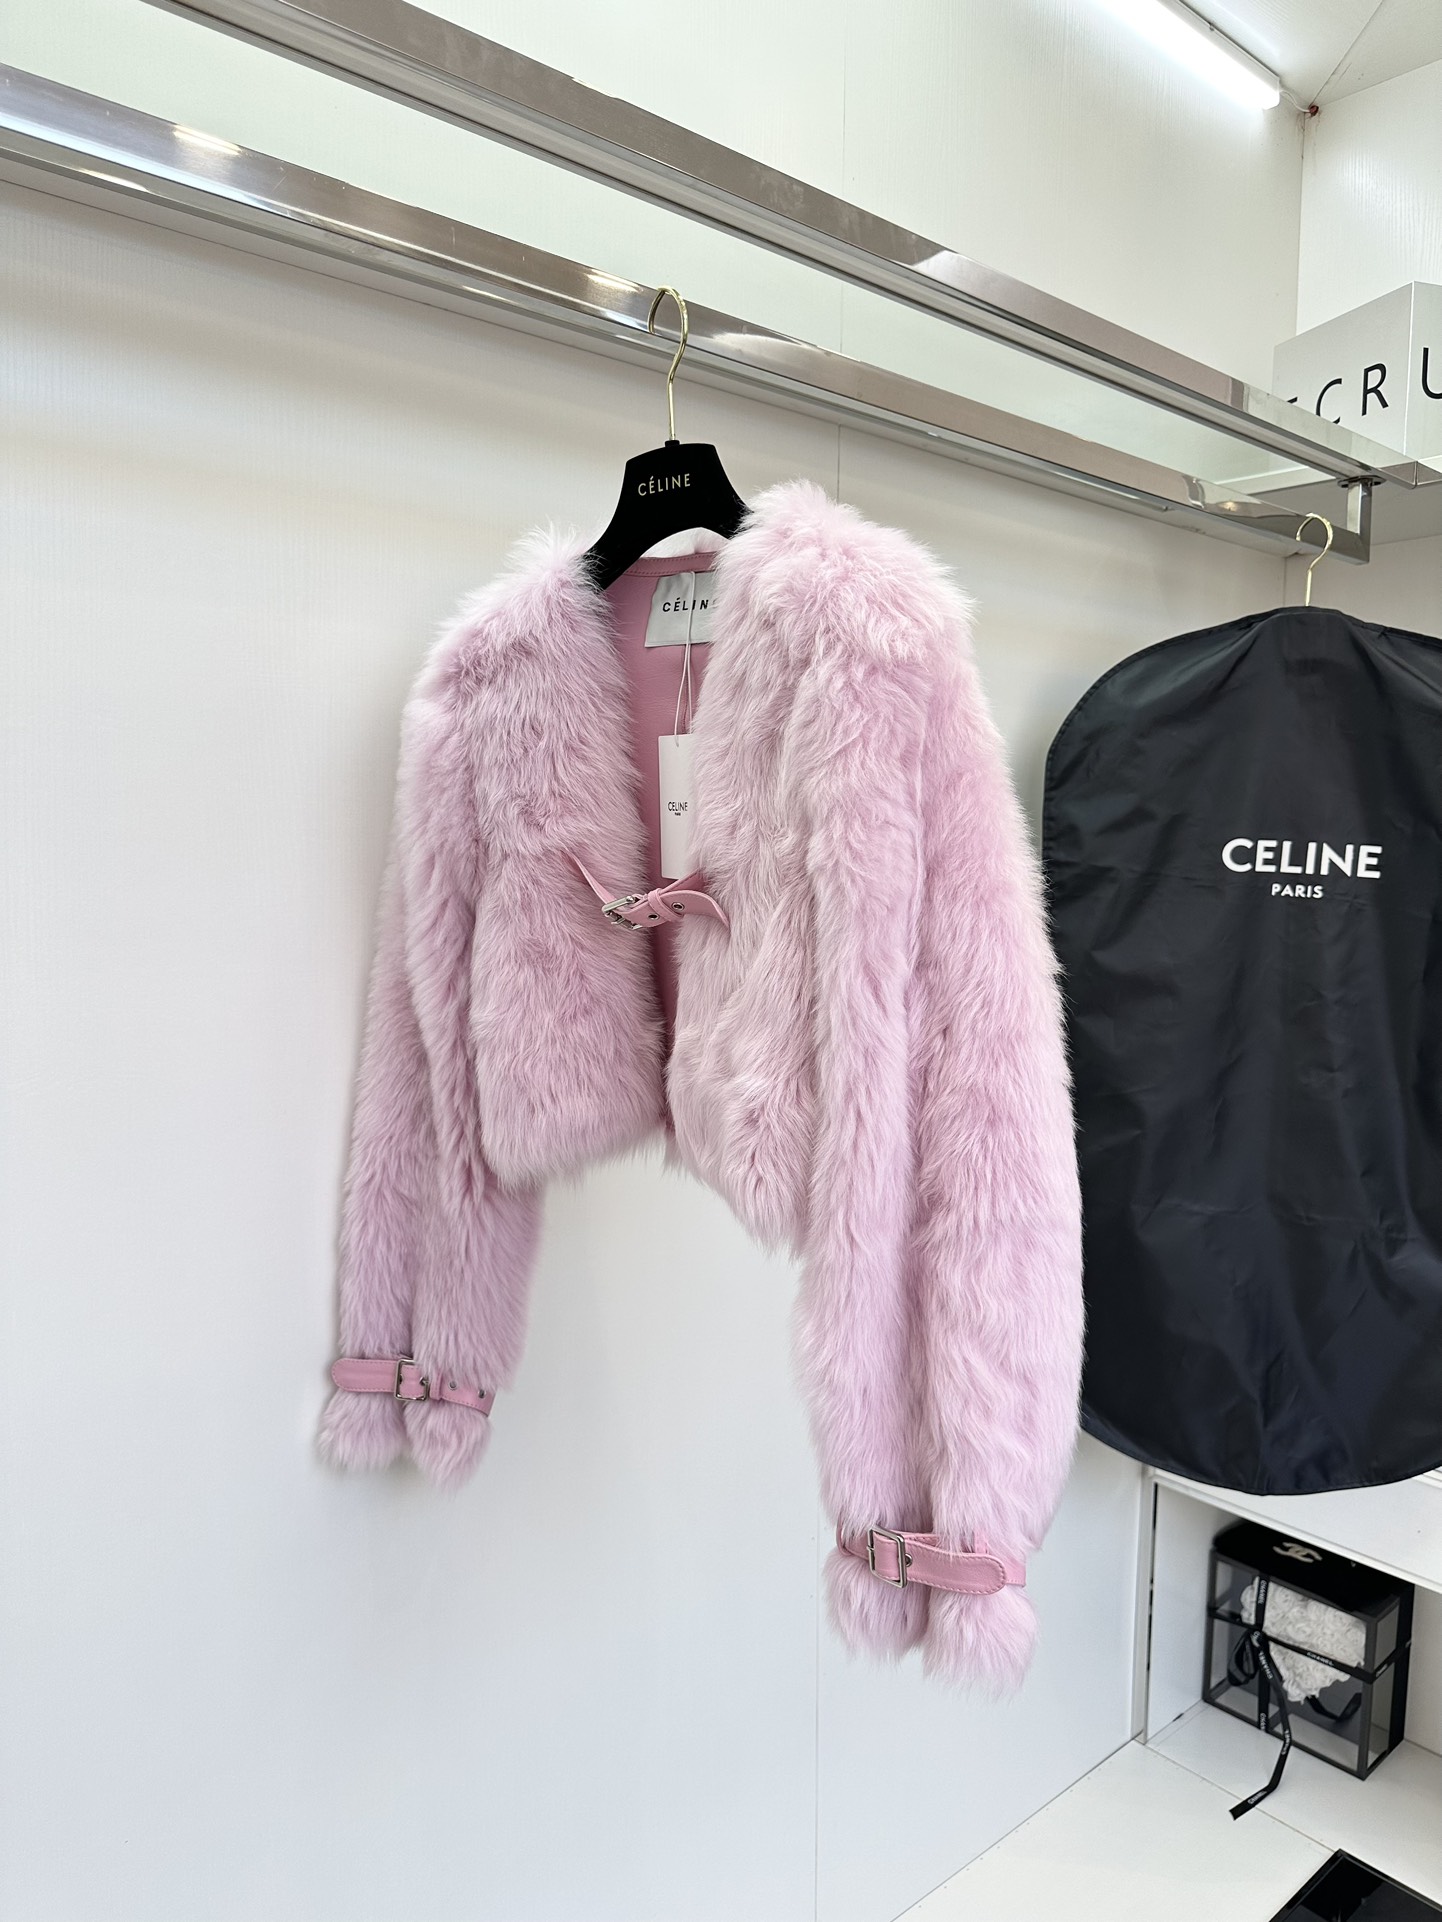 セリーヌ ジャンパー偽物 鮮やかな色 イタリア製 高級品 もこもこ 暖かい ファッション レディース 3色可選 ピンク_1